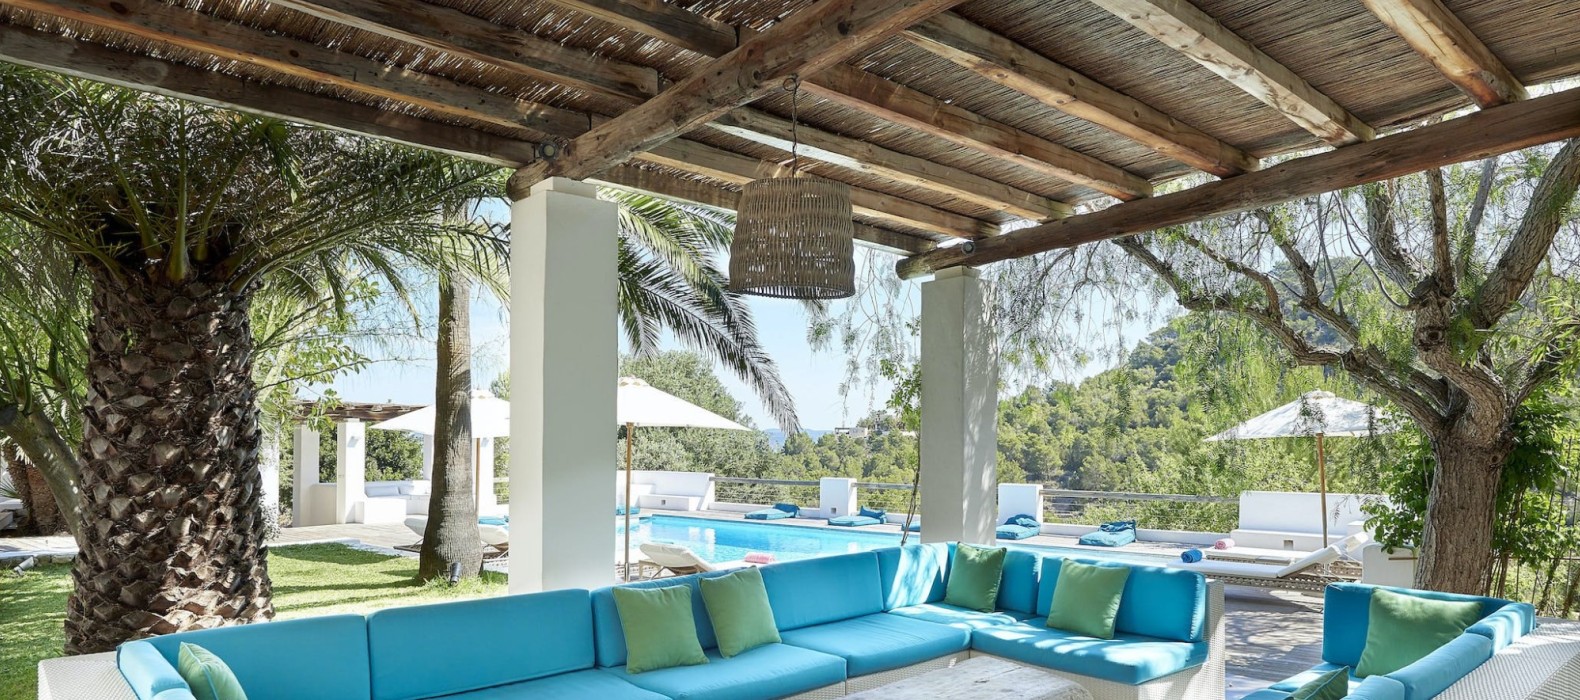 Chill area of Finca Las Velas in Ibiza